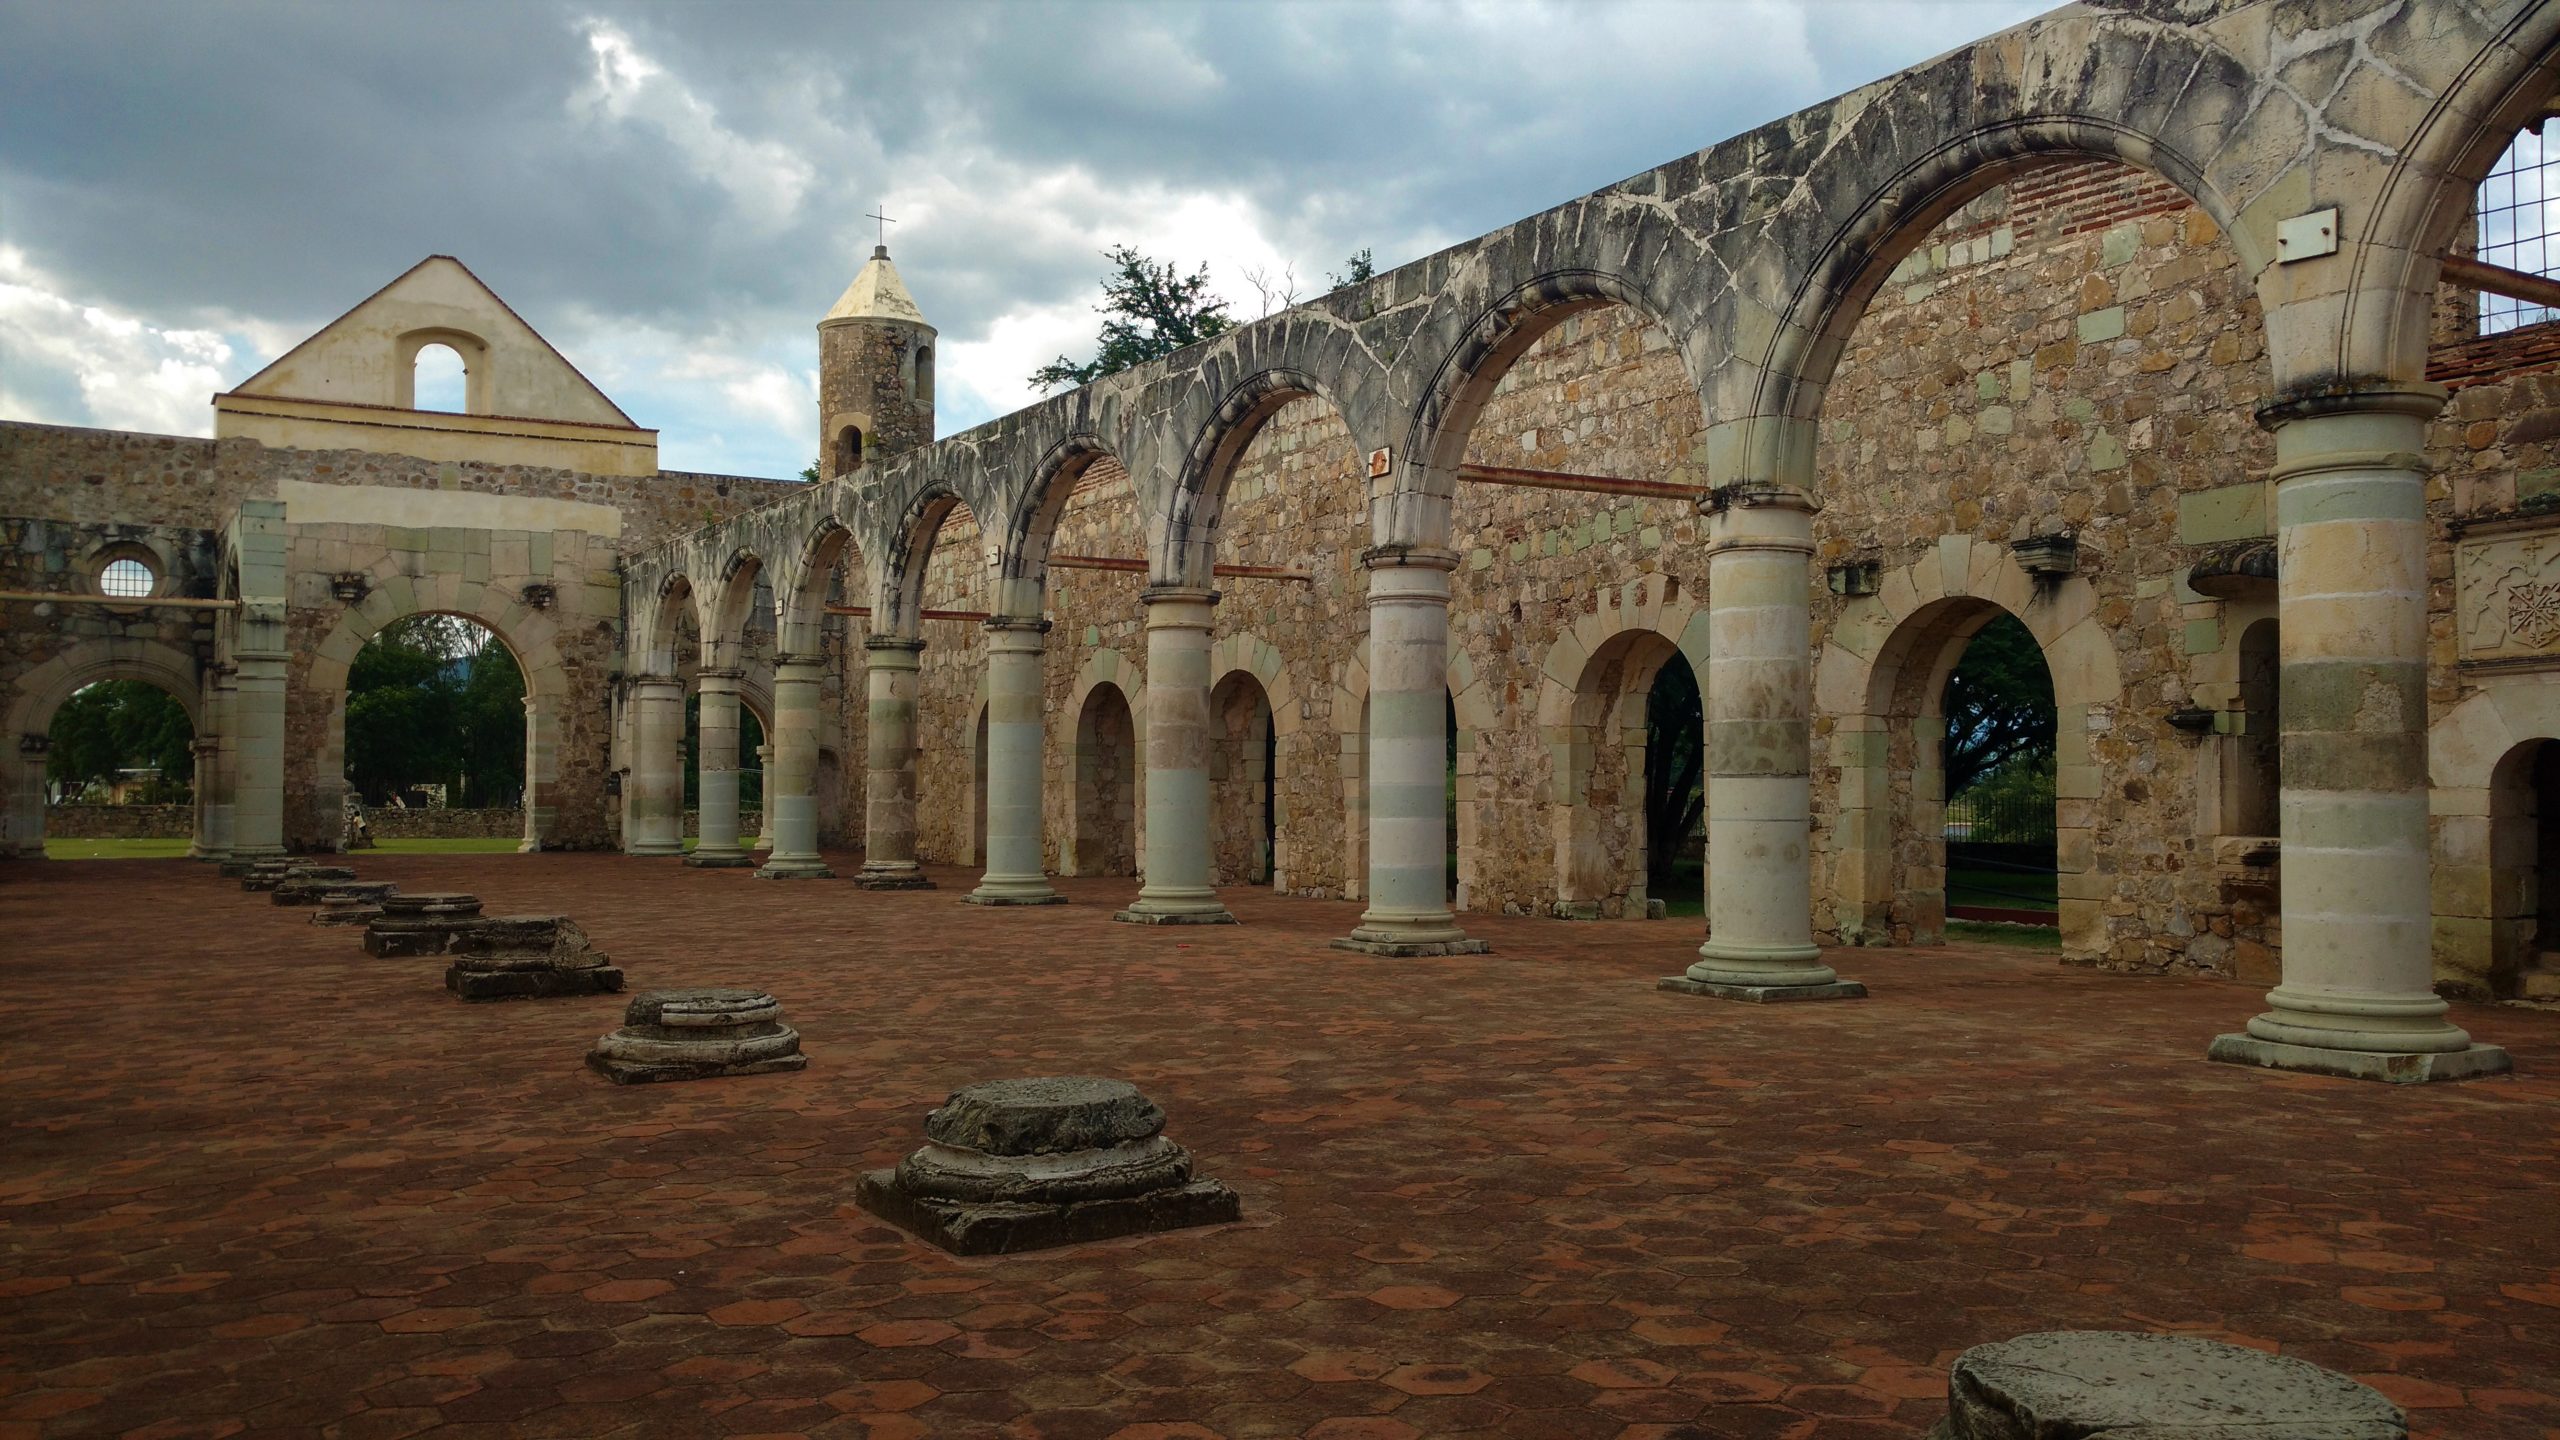 Ex Convento Cuilapam de Guerrero